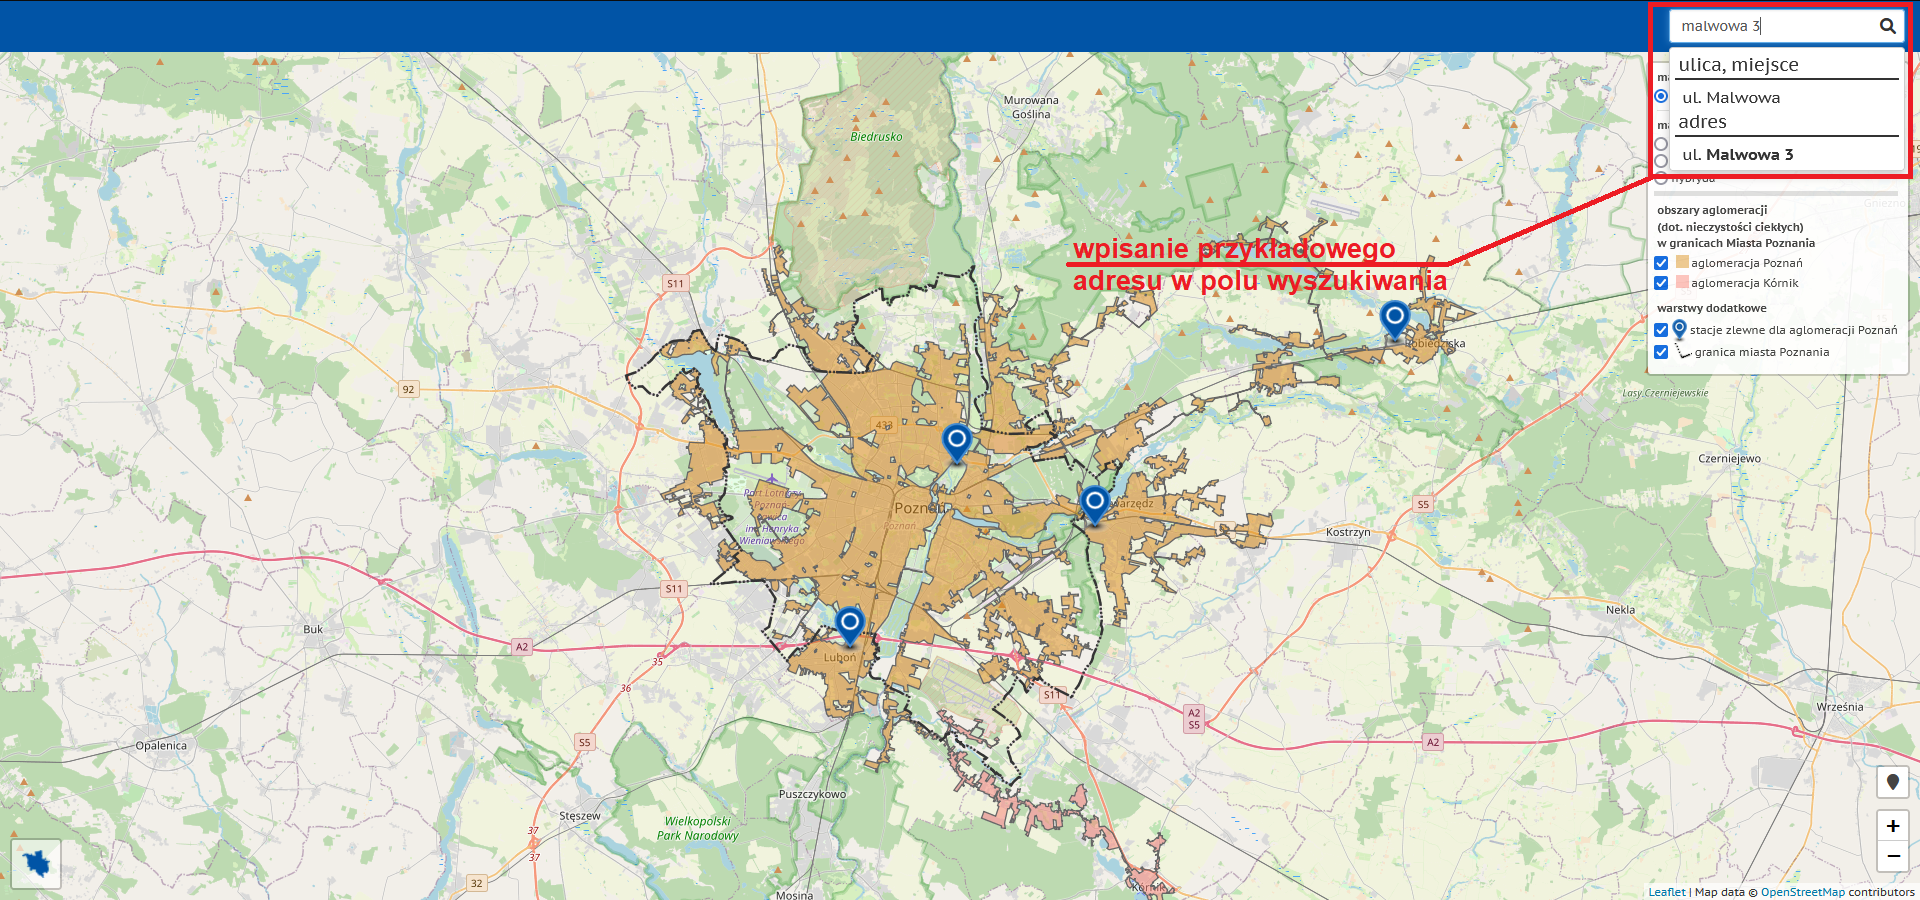 Zrzut ekranu z mapy Plan Miasta Poznania w widoku domyślnym. Wskazówki graficzne i tekstowe dotyczące wyszukiwania adresu (wpisanie przykładowego adresu w polu wyszukiwania).